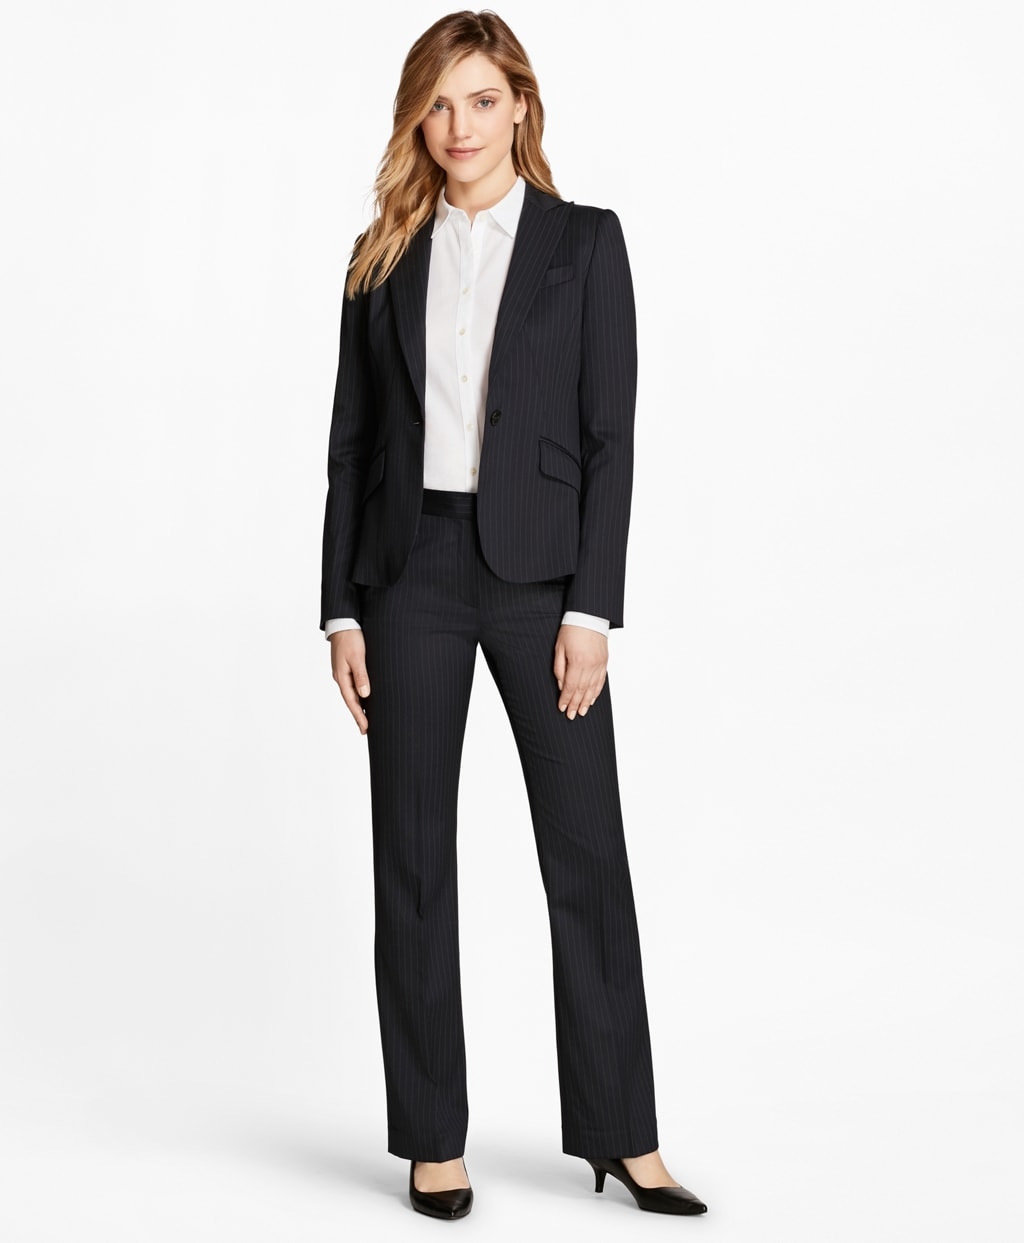 „Brooks Brothers“ kostiumas yra oficialios verslo aprangos pavyzdys verslo profesionalų aprangos kodui